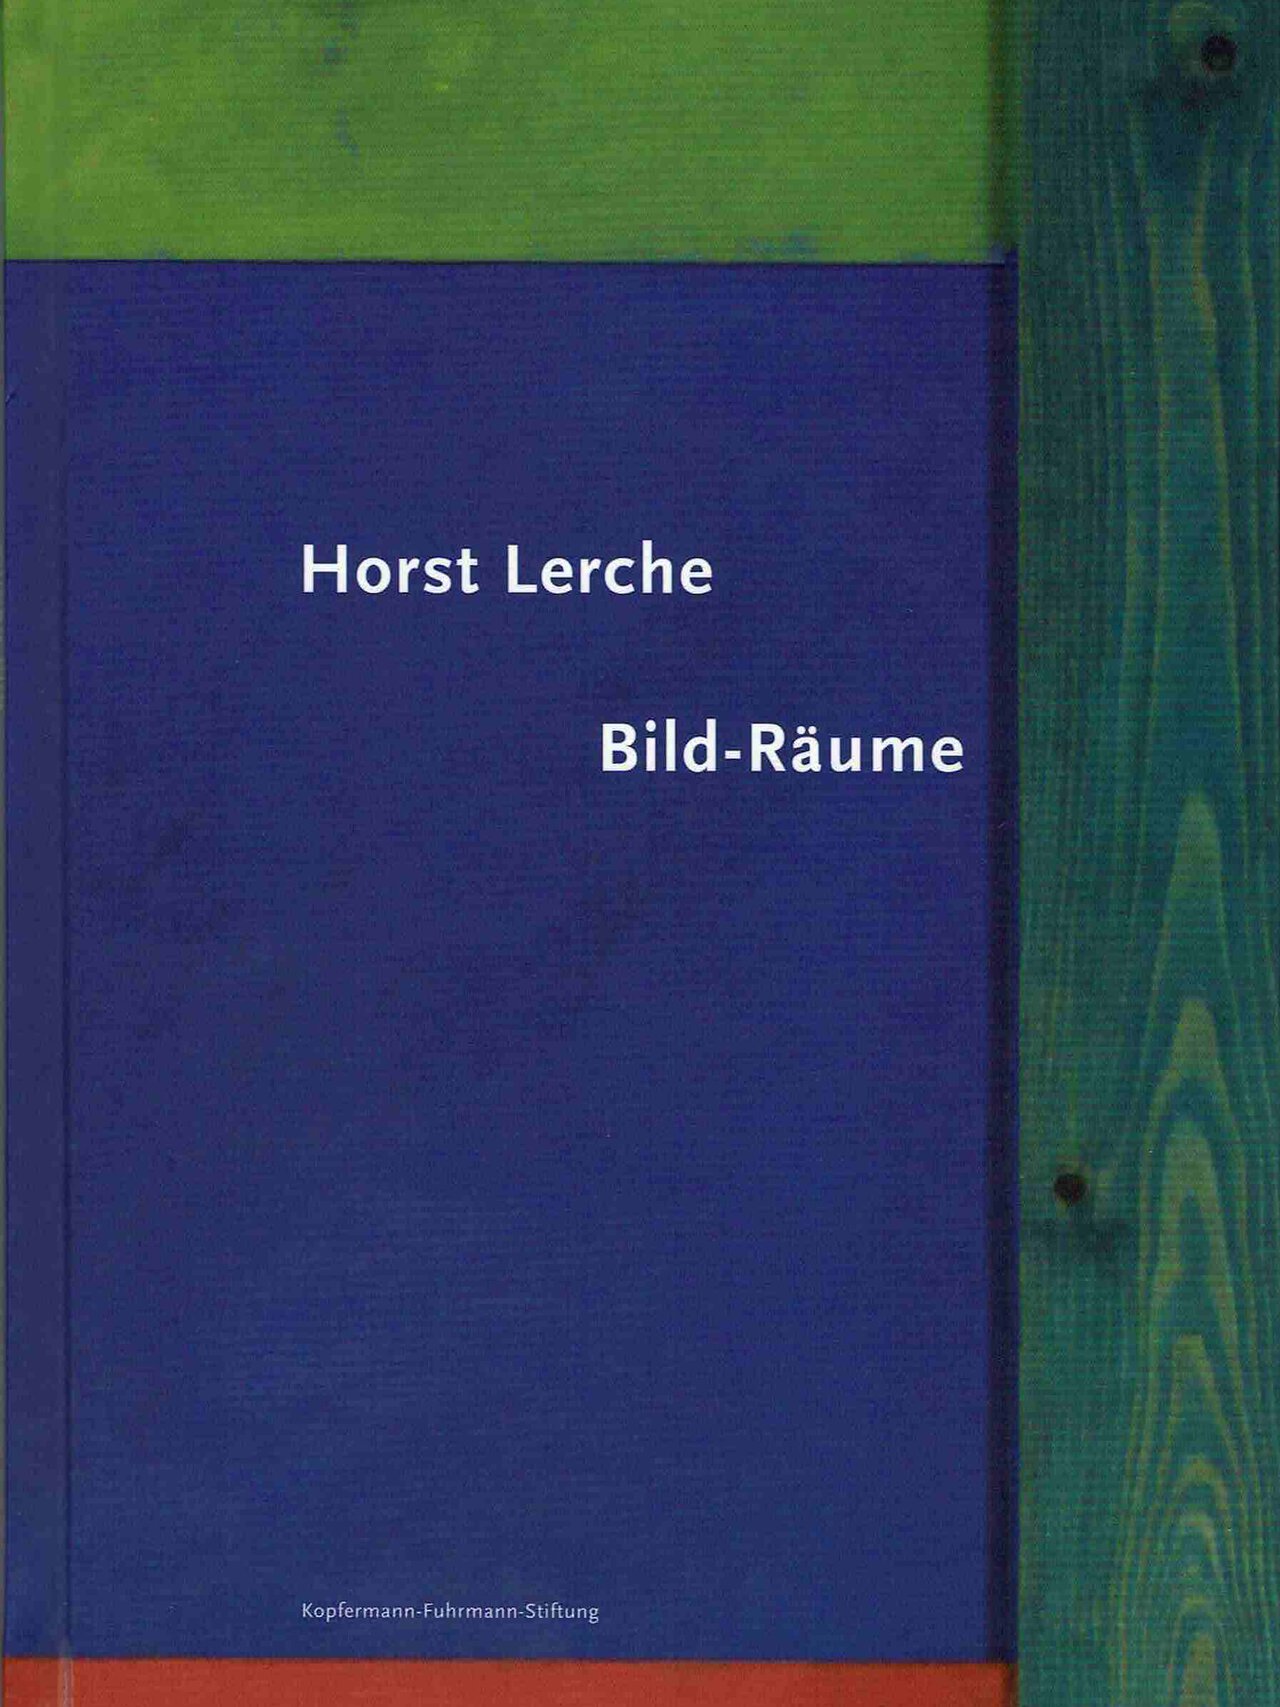 Horst Lerche - Bild-Räume